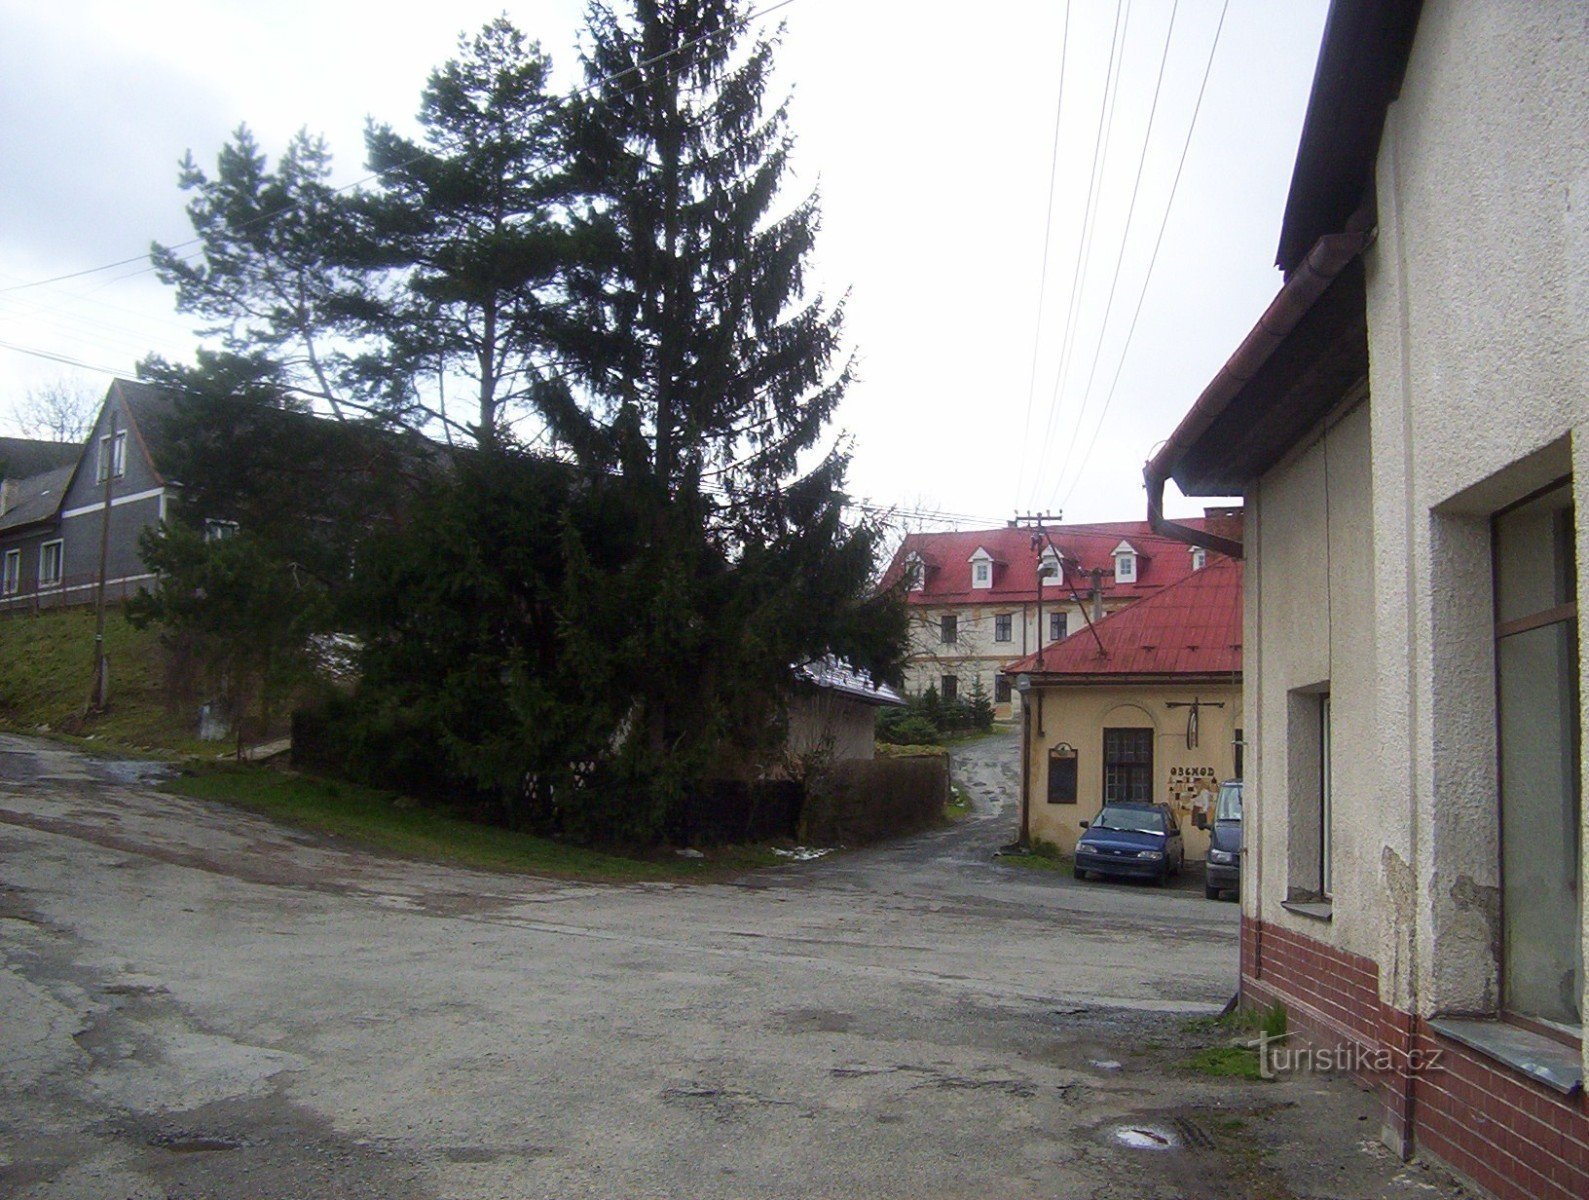 Kozov-semirremolque-acceso al castillo-restaurante y hotel Valáškův grunt-Foto: Ulrych Mir.